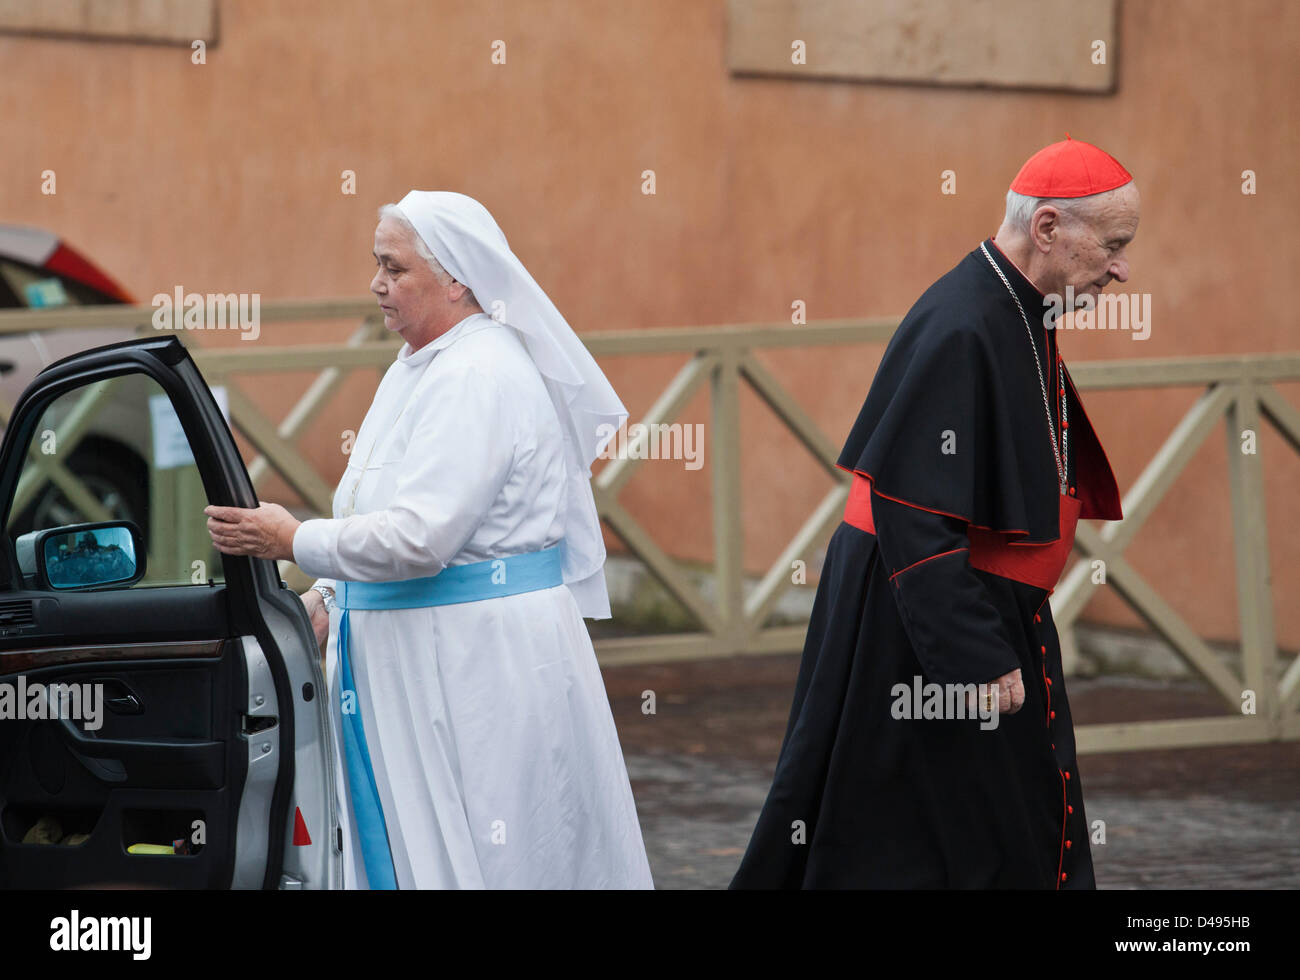 Il Cardinale e monaca al settimo collegio cardinalizio 8 marzo 2013, Roma, Italia Foto Stock